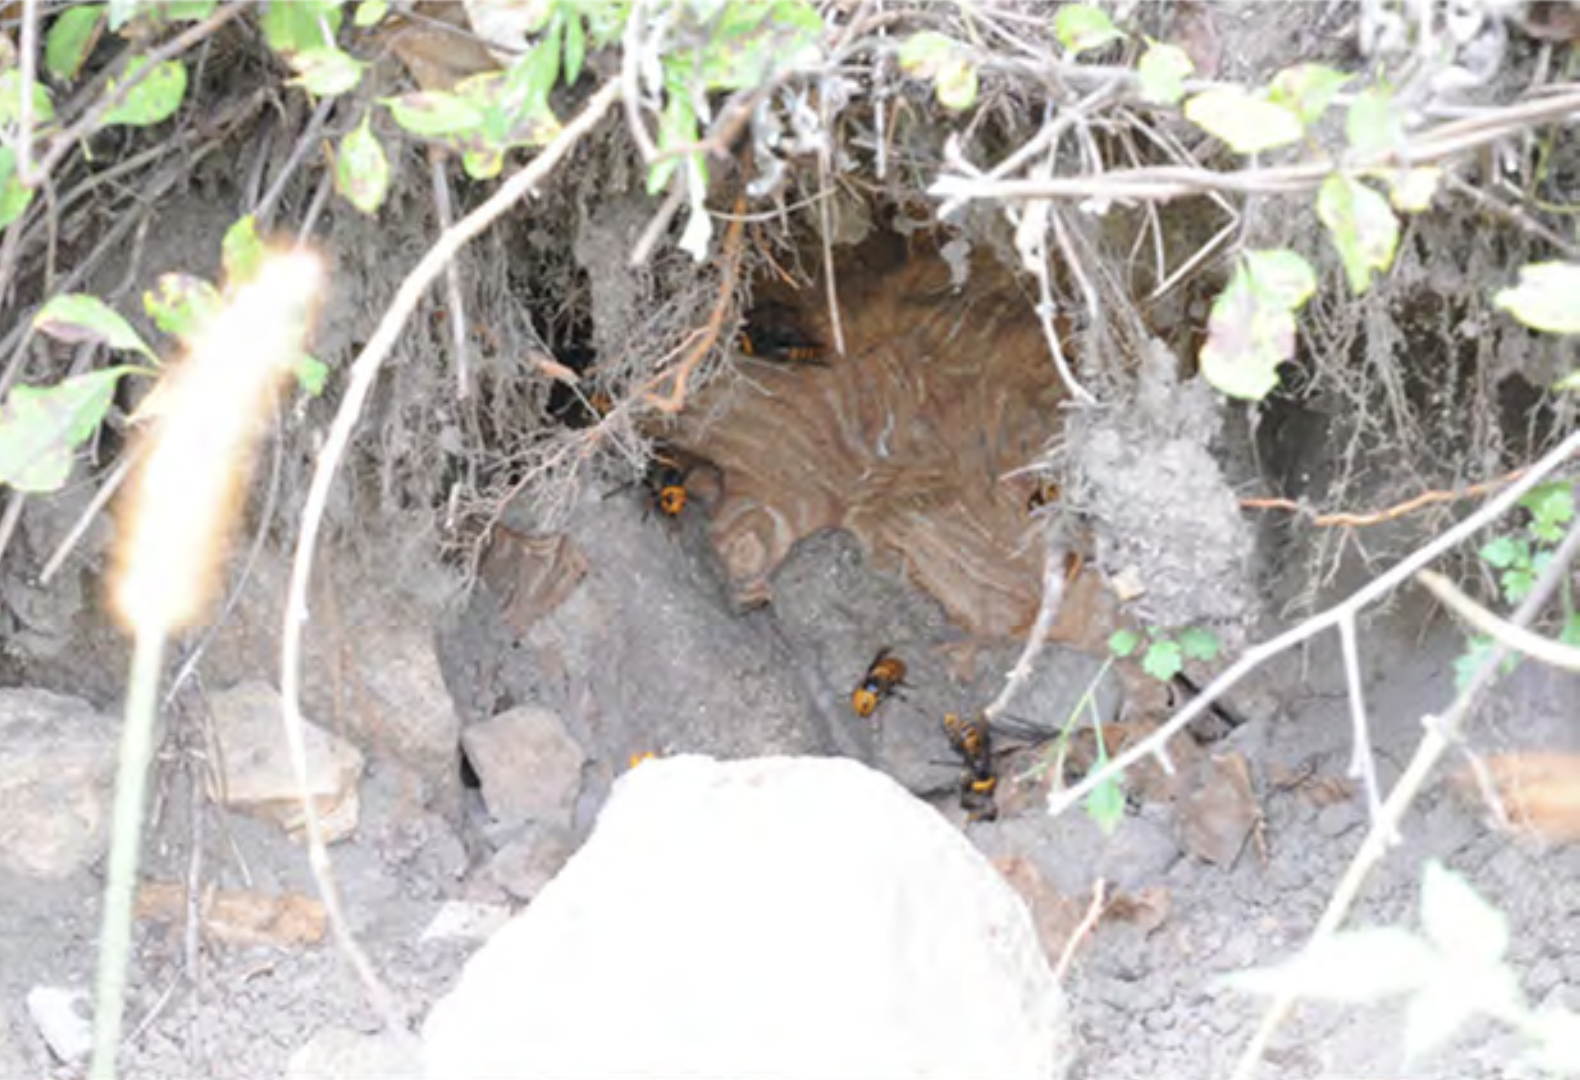 Asian giant hornet nest on ground